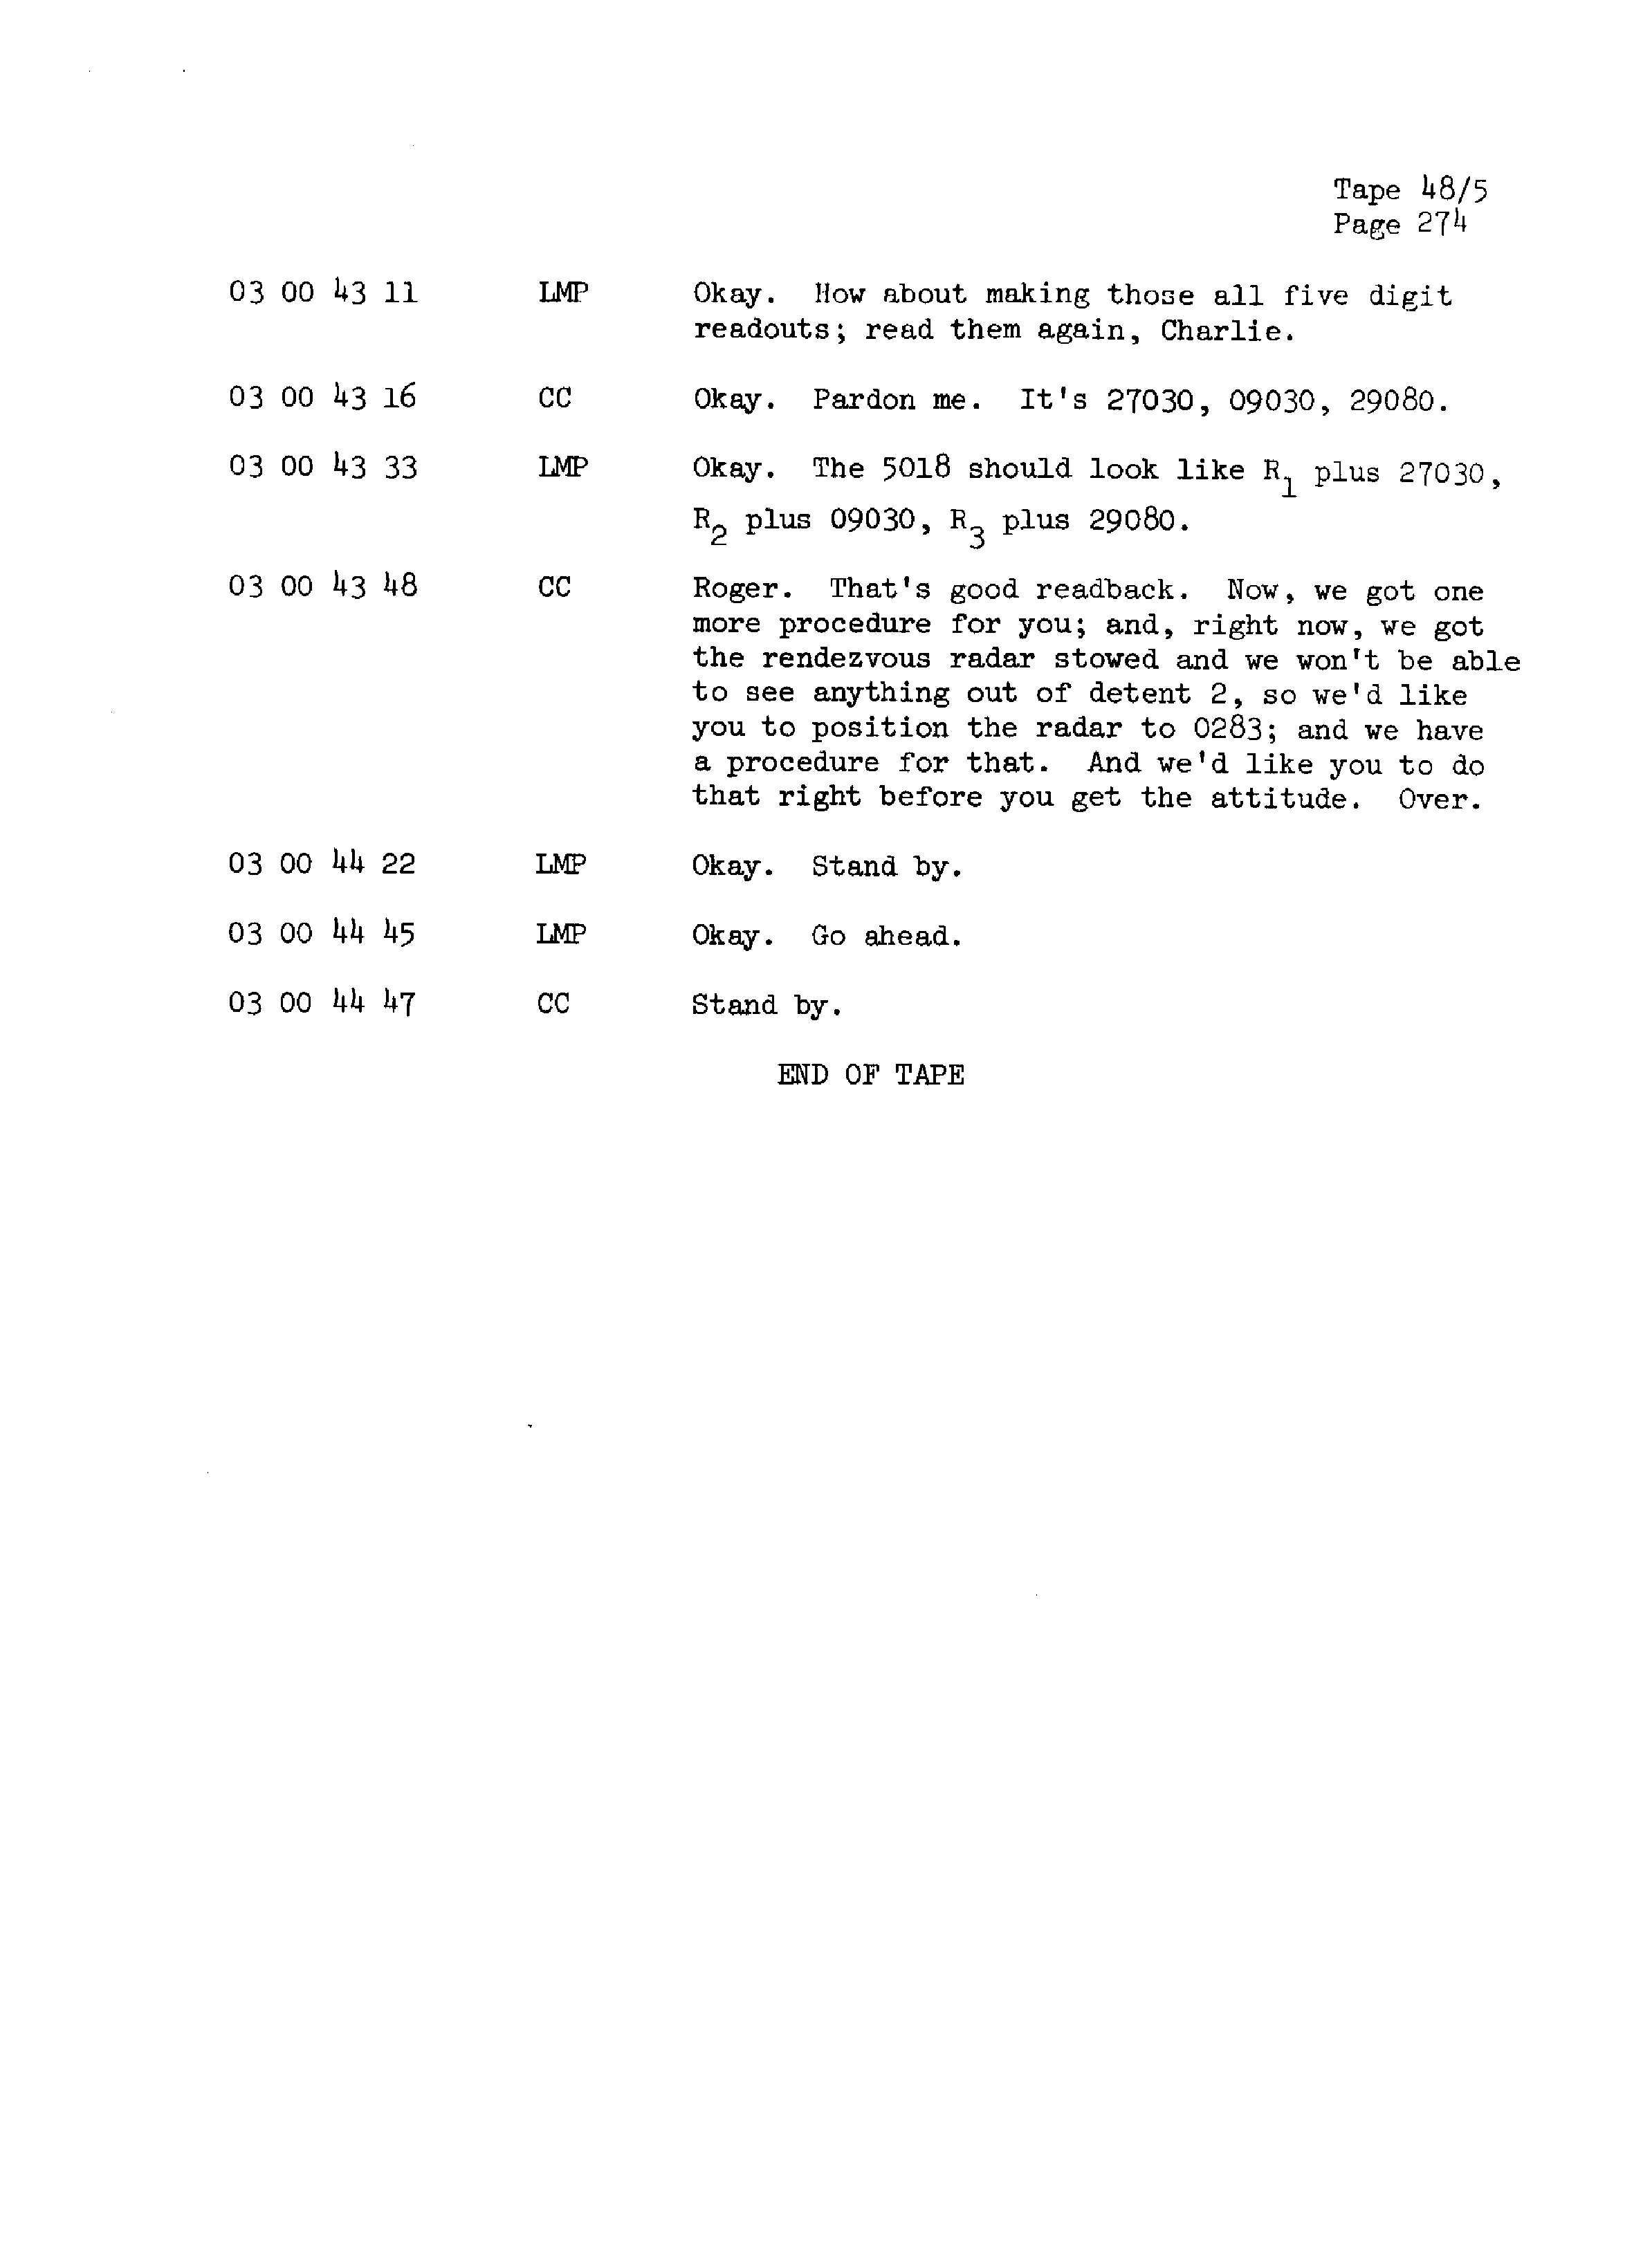 Page 281 of Apollo 13’s original transcript